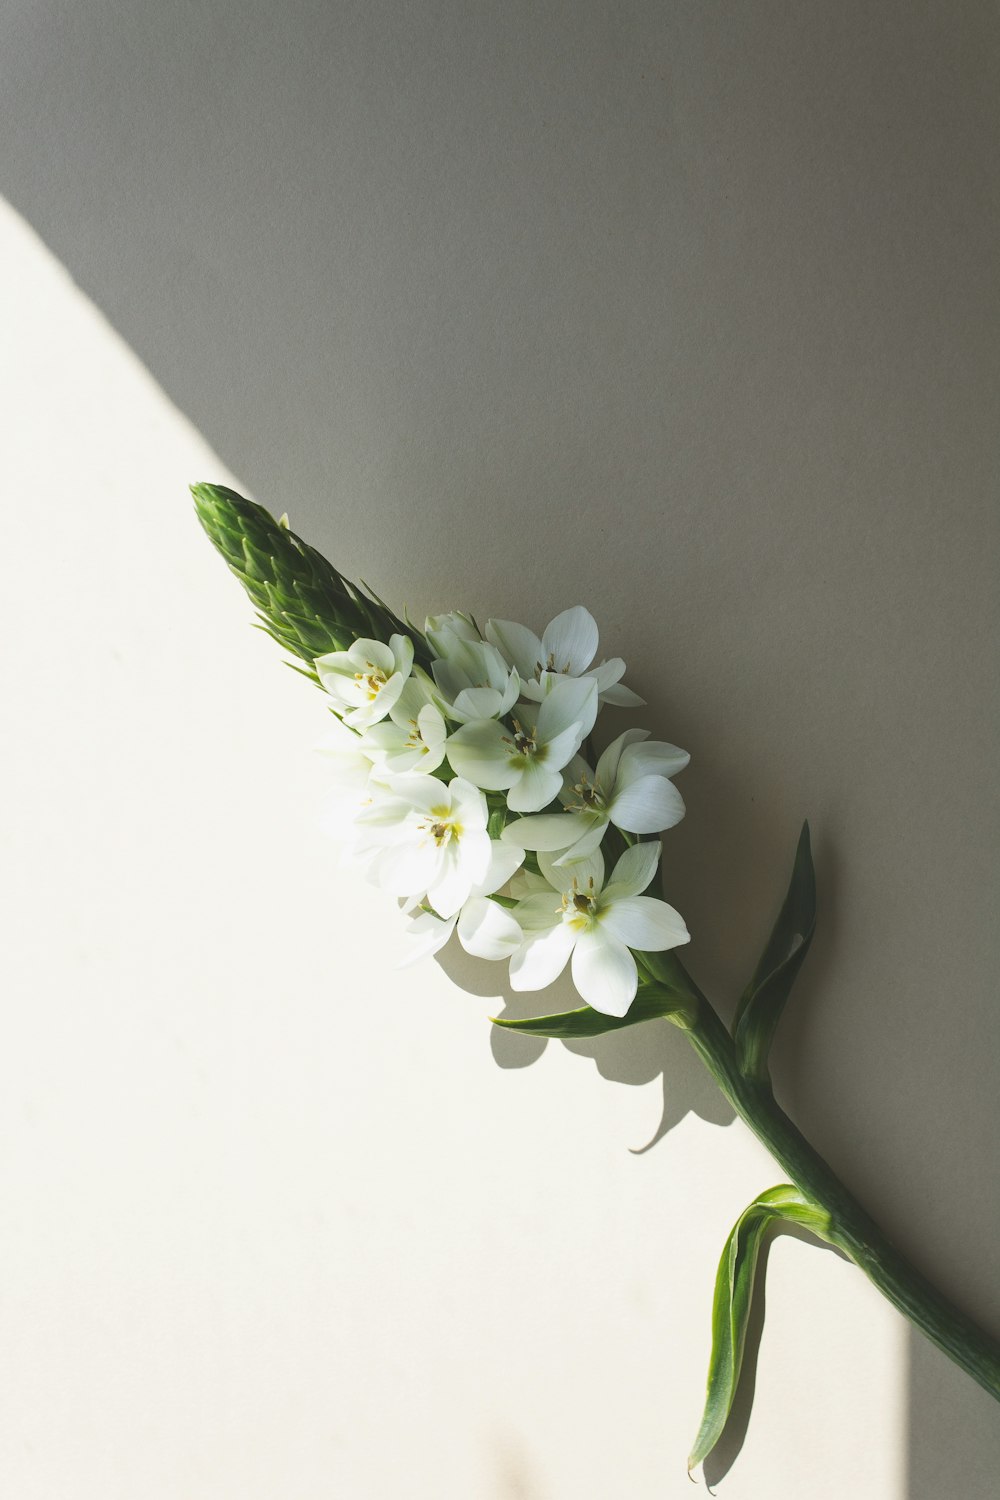 eine weiße Blume mit grünen Stielen auf weißer Fläche